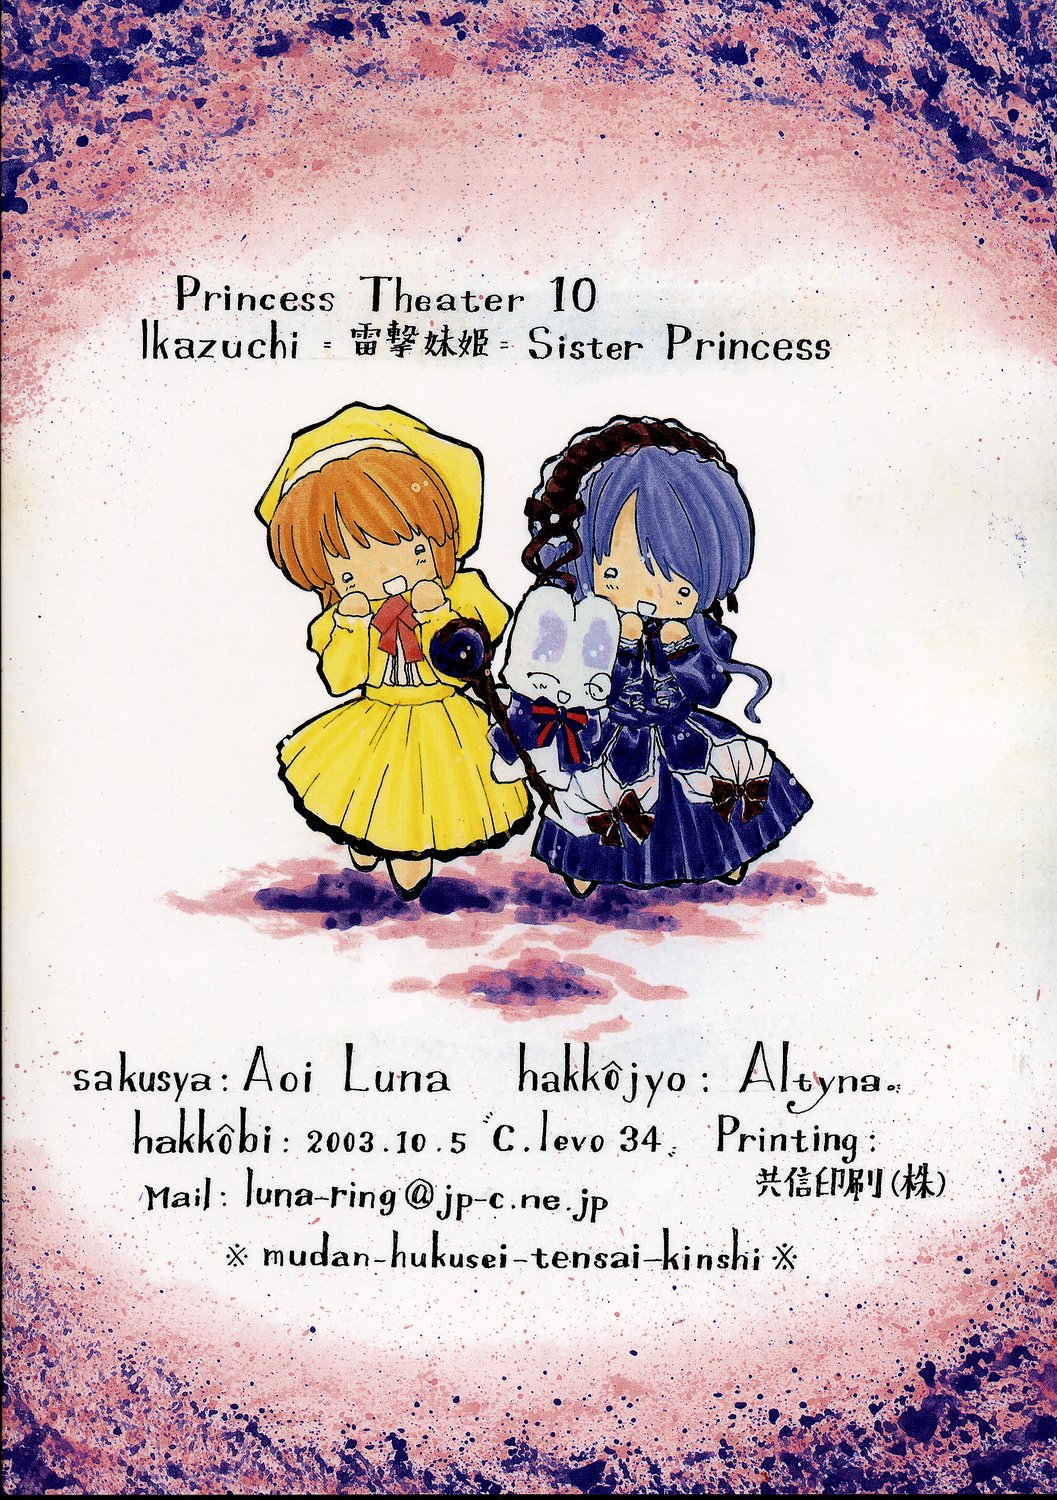 [Altyna (葵流奈)] Ikazuchi=電撃妹姫=Sister Princess (シスタープリンセス)